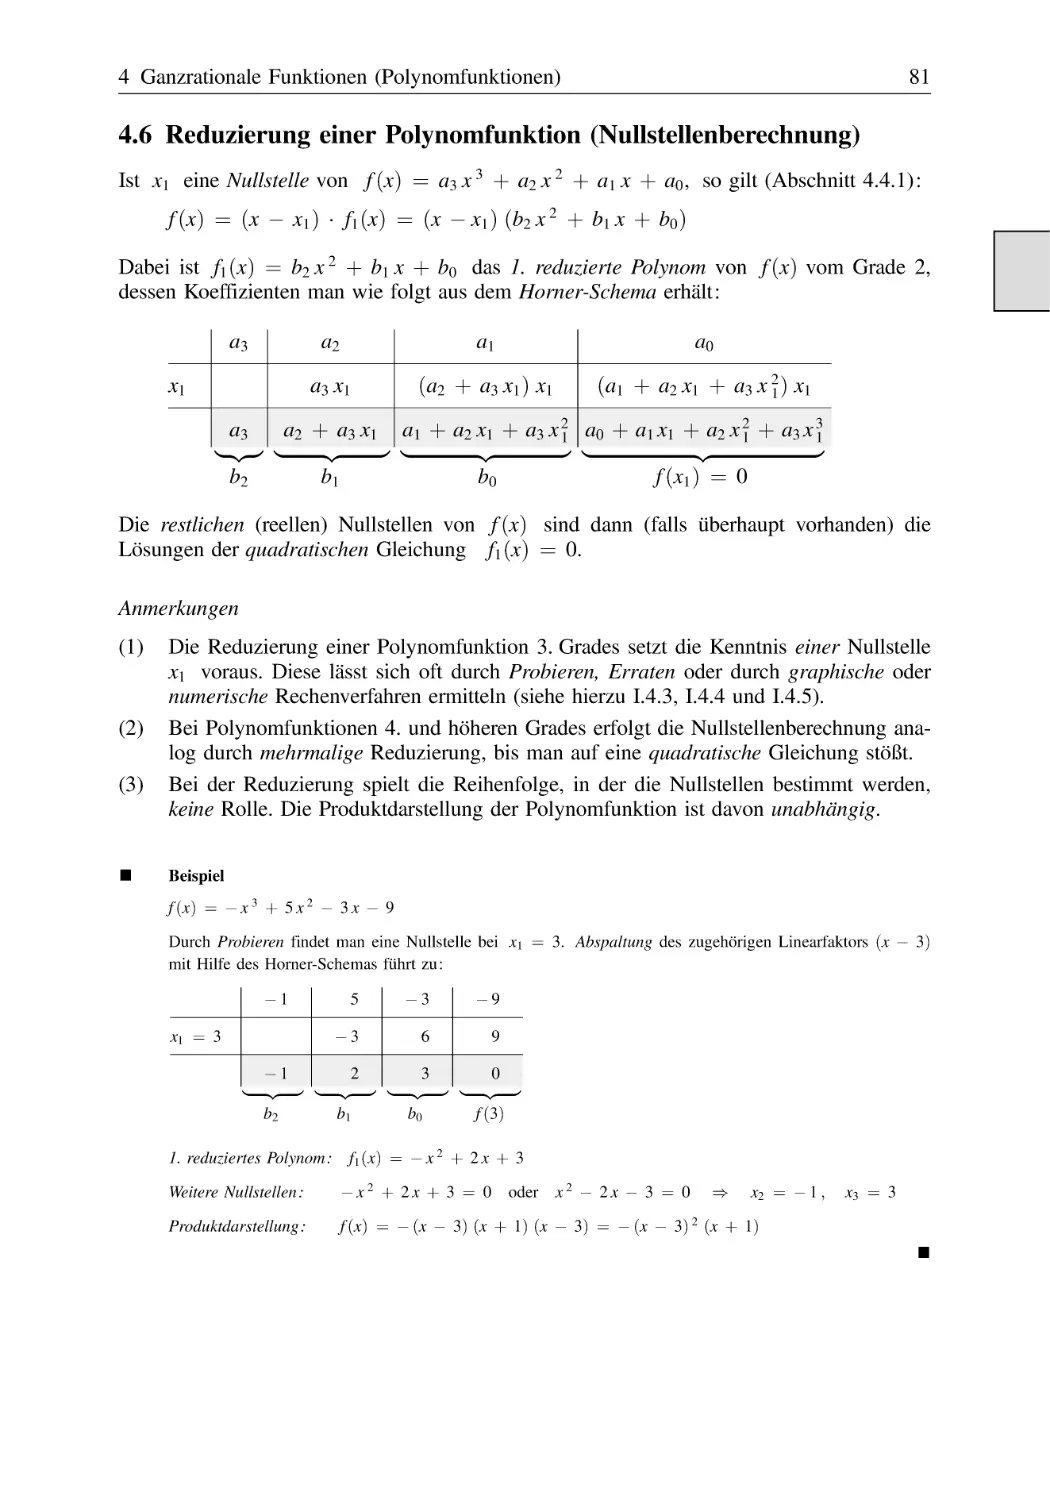 4.6 Reduzierung einer Polynomfunktion (Nullstellenberechnung)